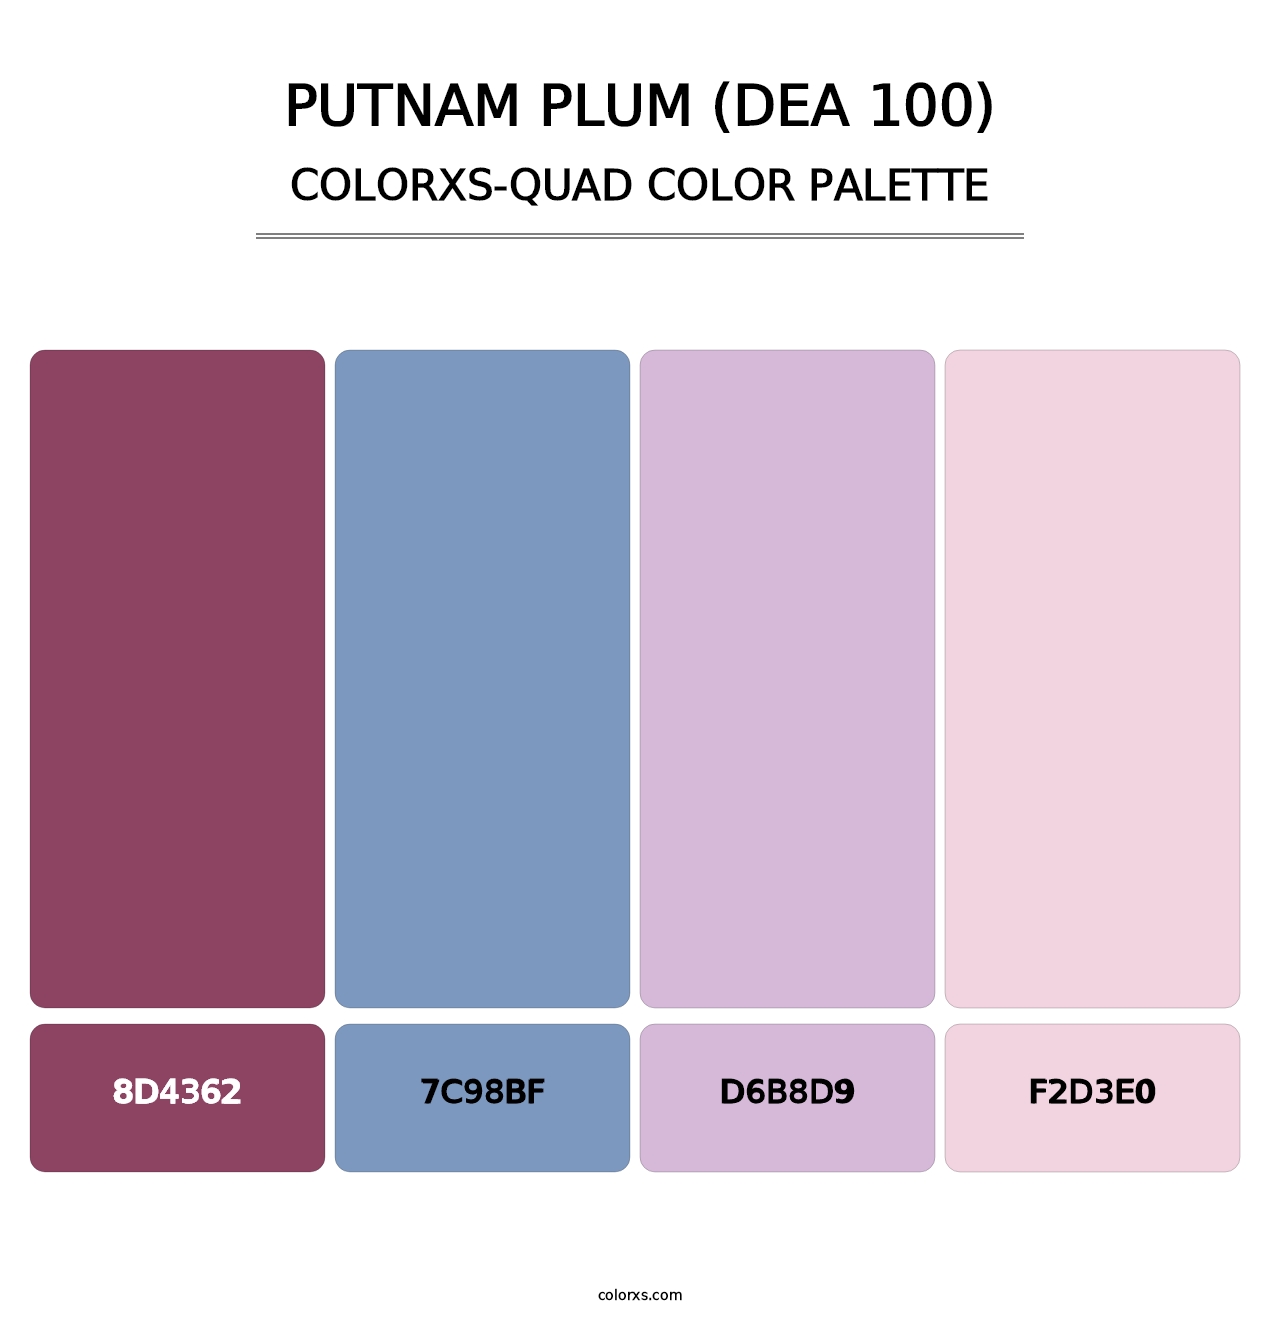 Putnam Plum (DEA 100) - Colorxs Quad Palette